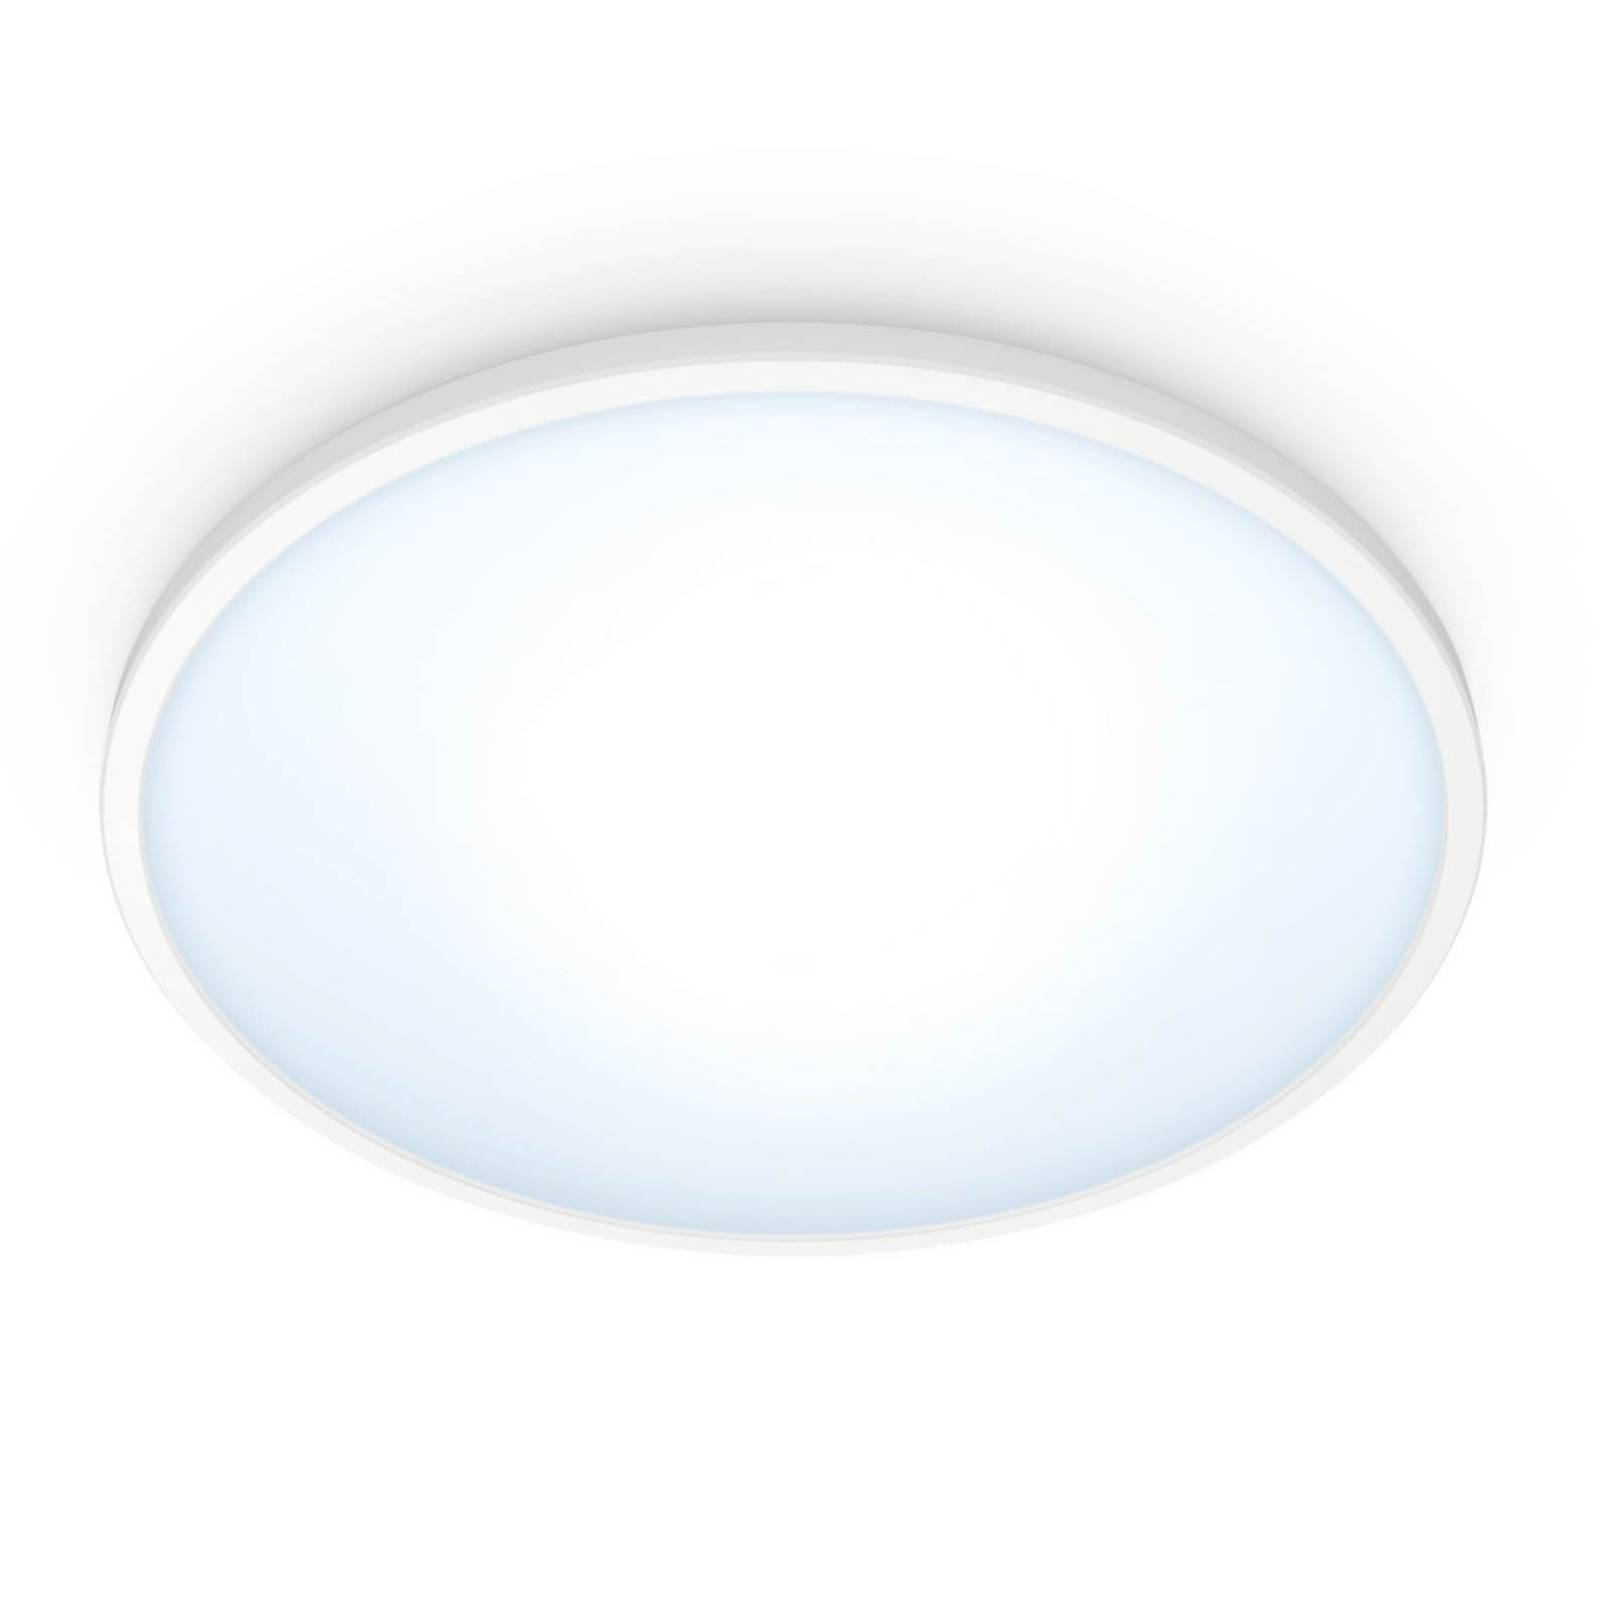 WiZ Super Slim plafonnier LED, 16W, blanc